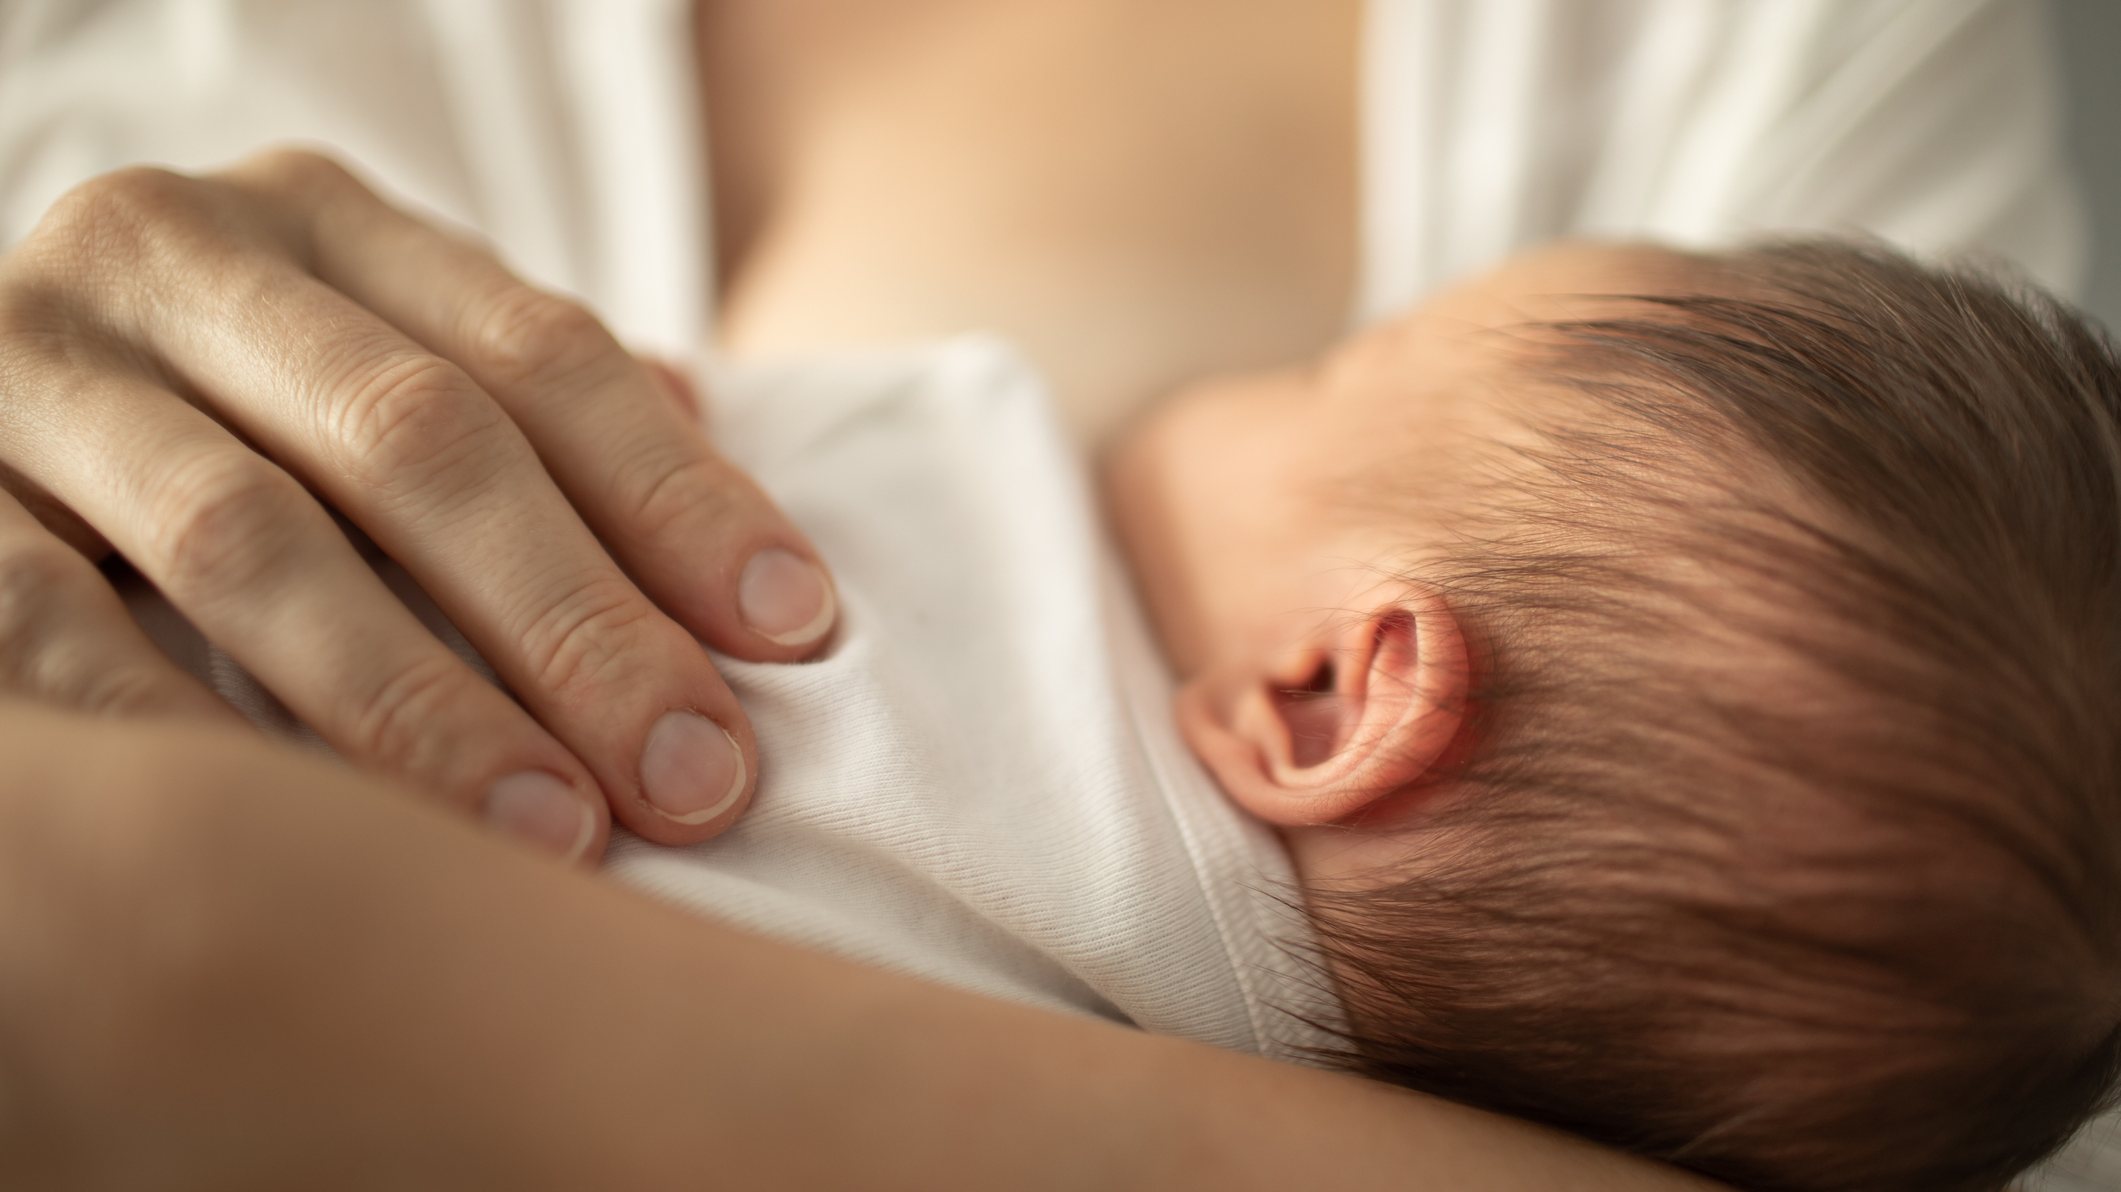 61% das unidades de neonatologia separaram o bebé da mãe e 70% não permitiram o aleitamento materno